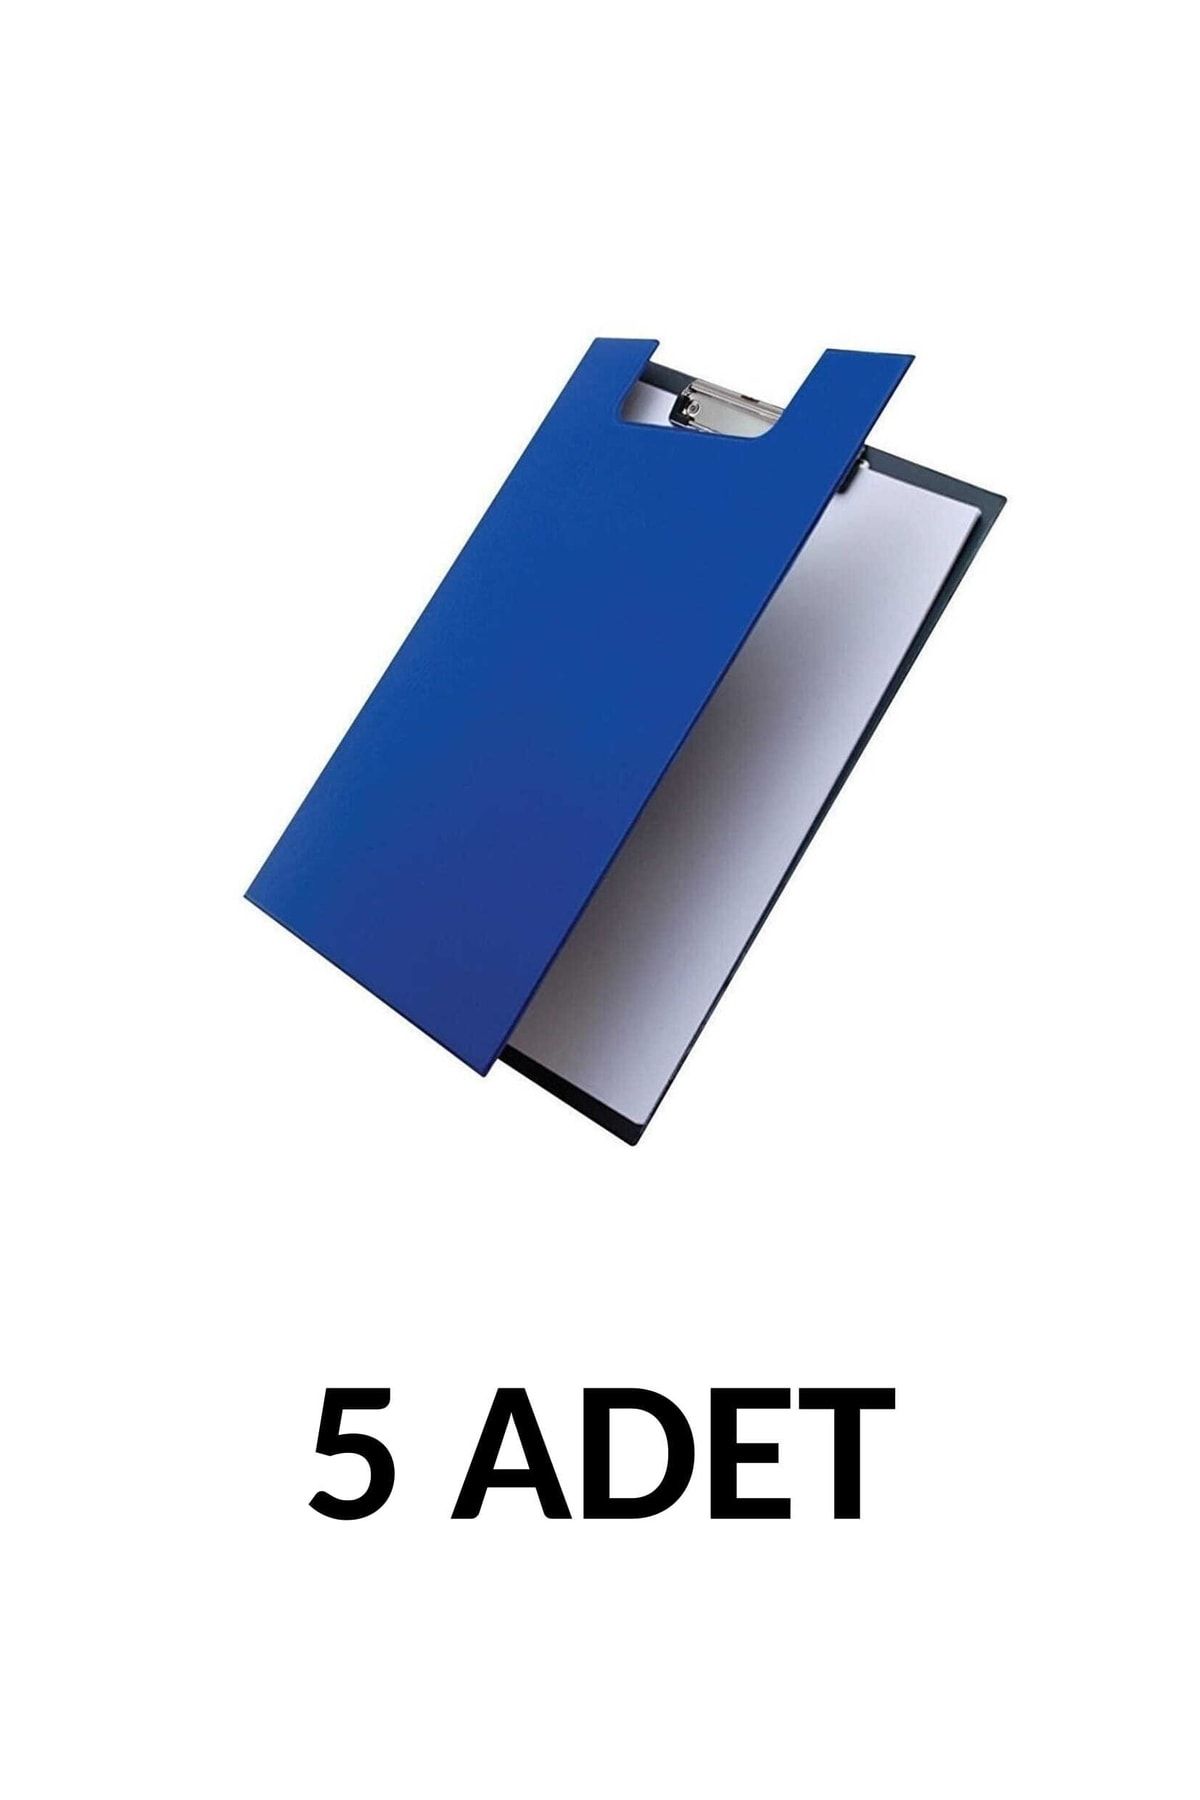 KRAF 5 Adet A4 Kapaklı Sekreterlik Dosyası Mavi